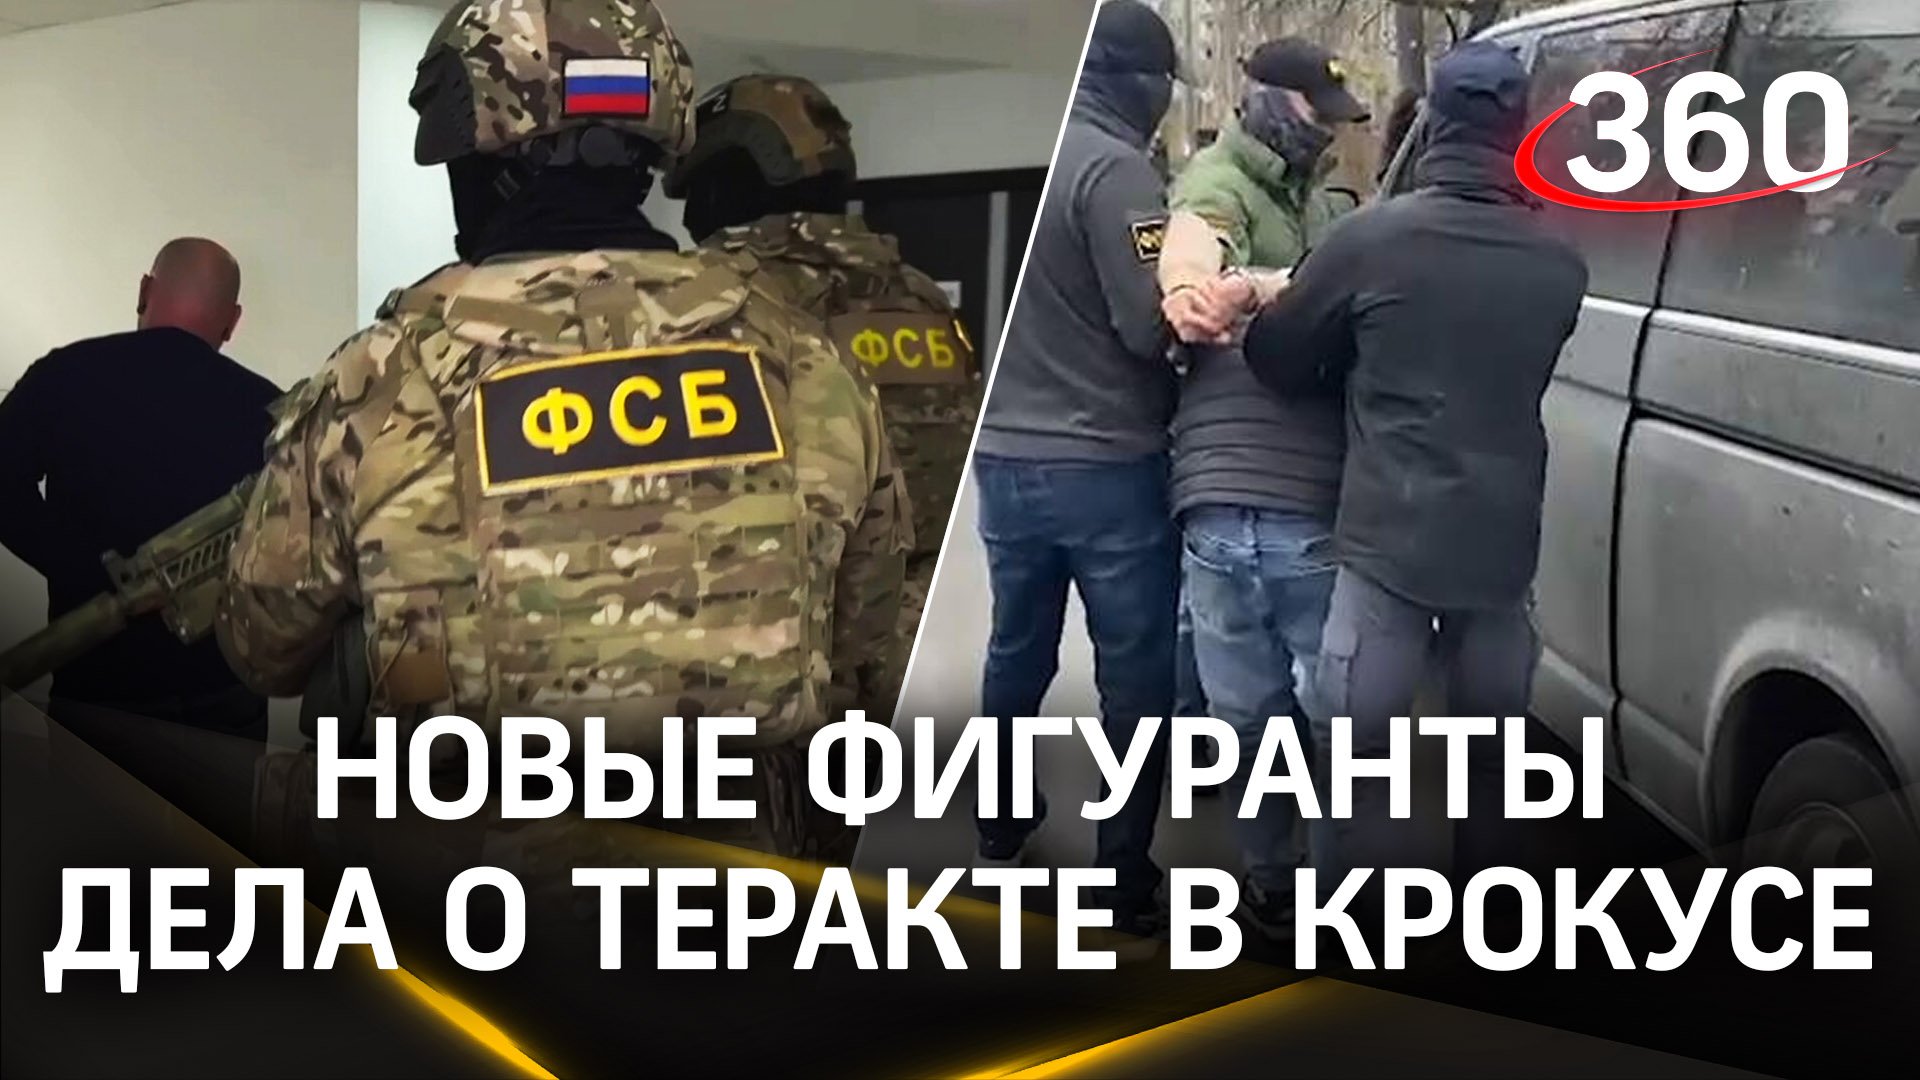 Видео: ФСБ задержала новых пособников террористов, устроивших атаку на Крокус